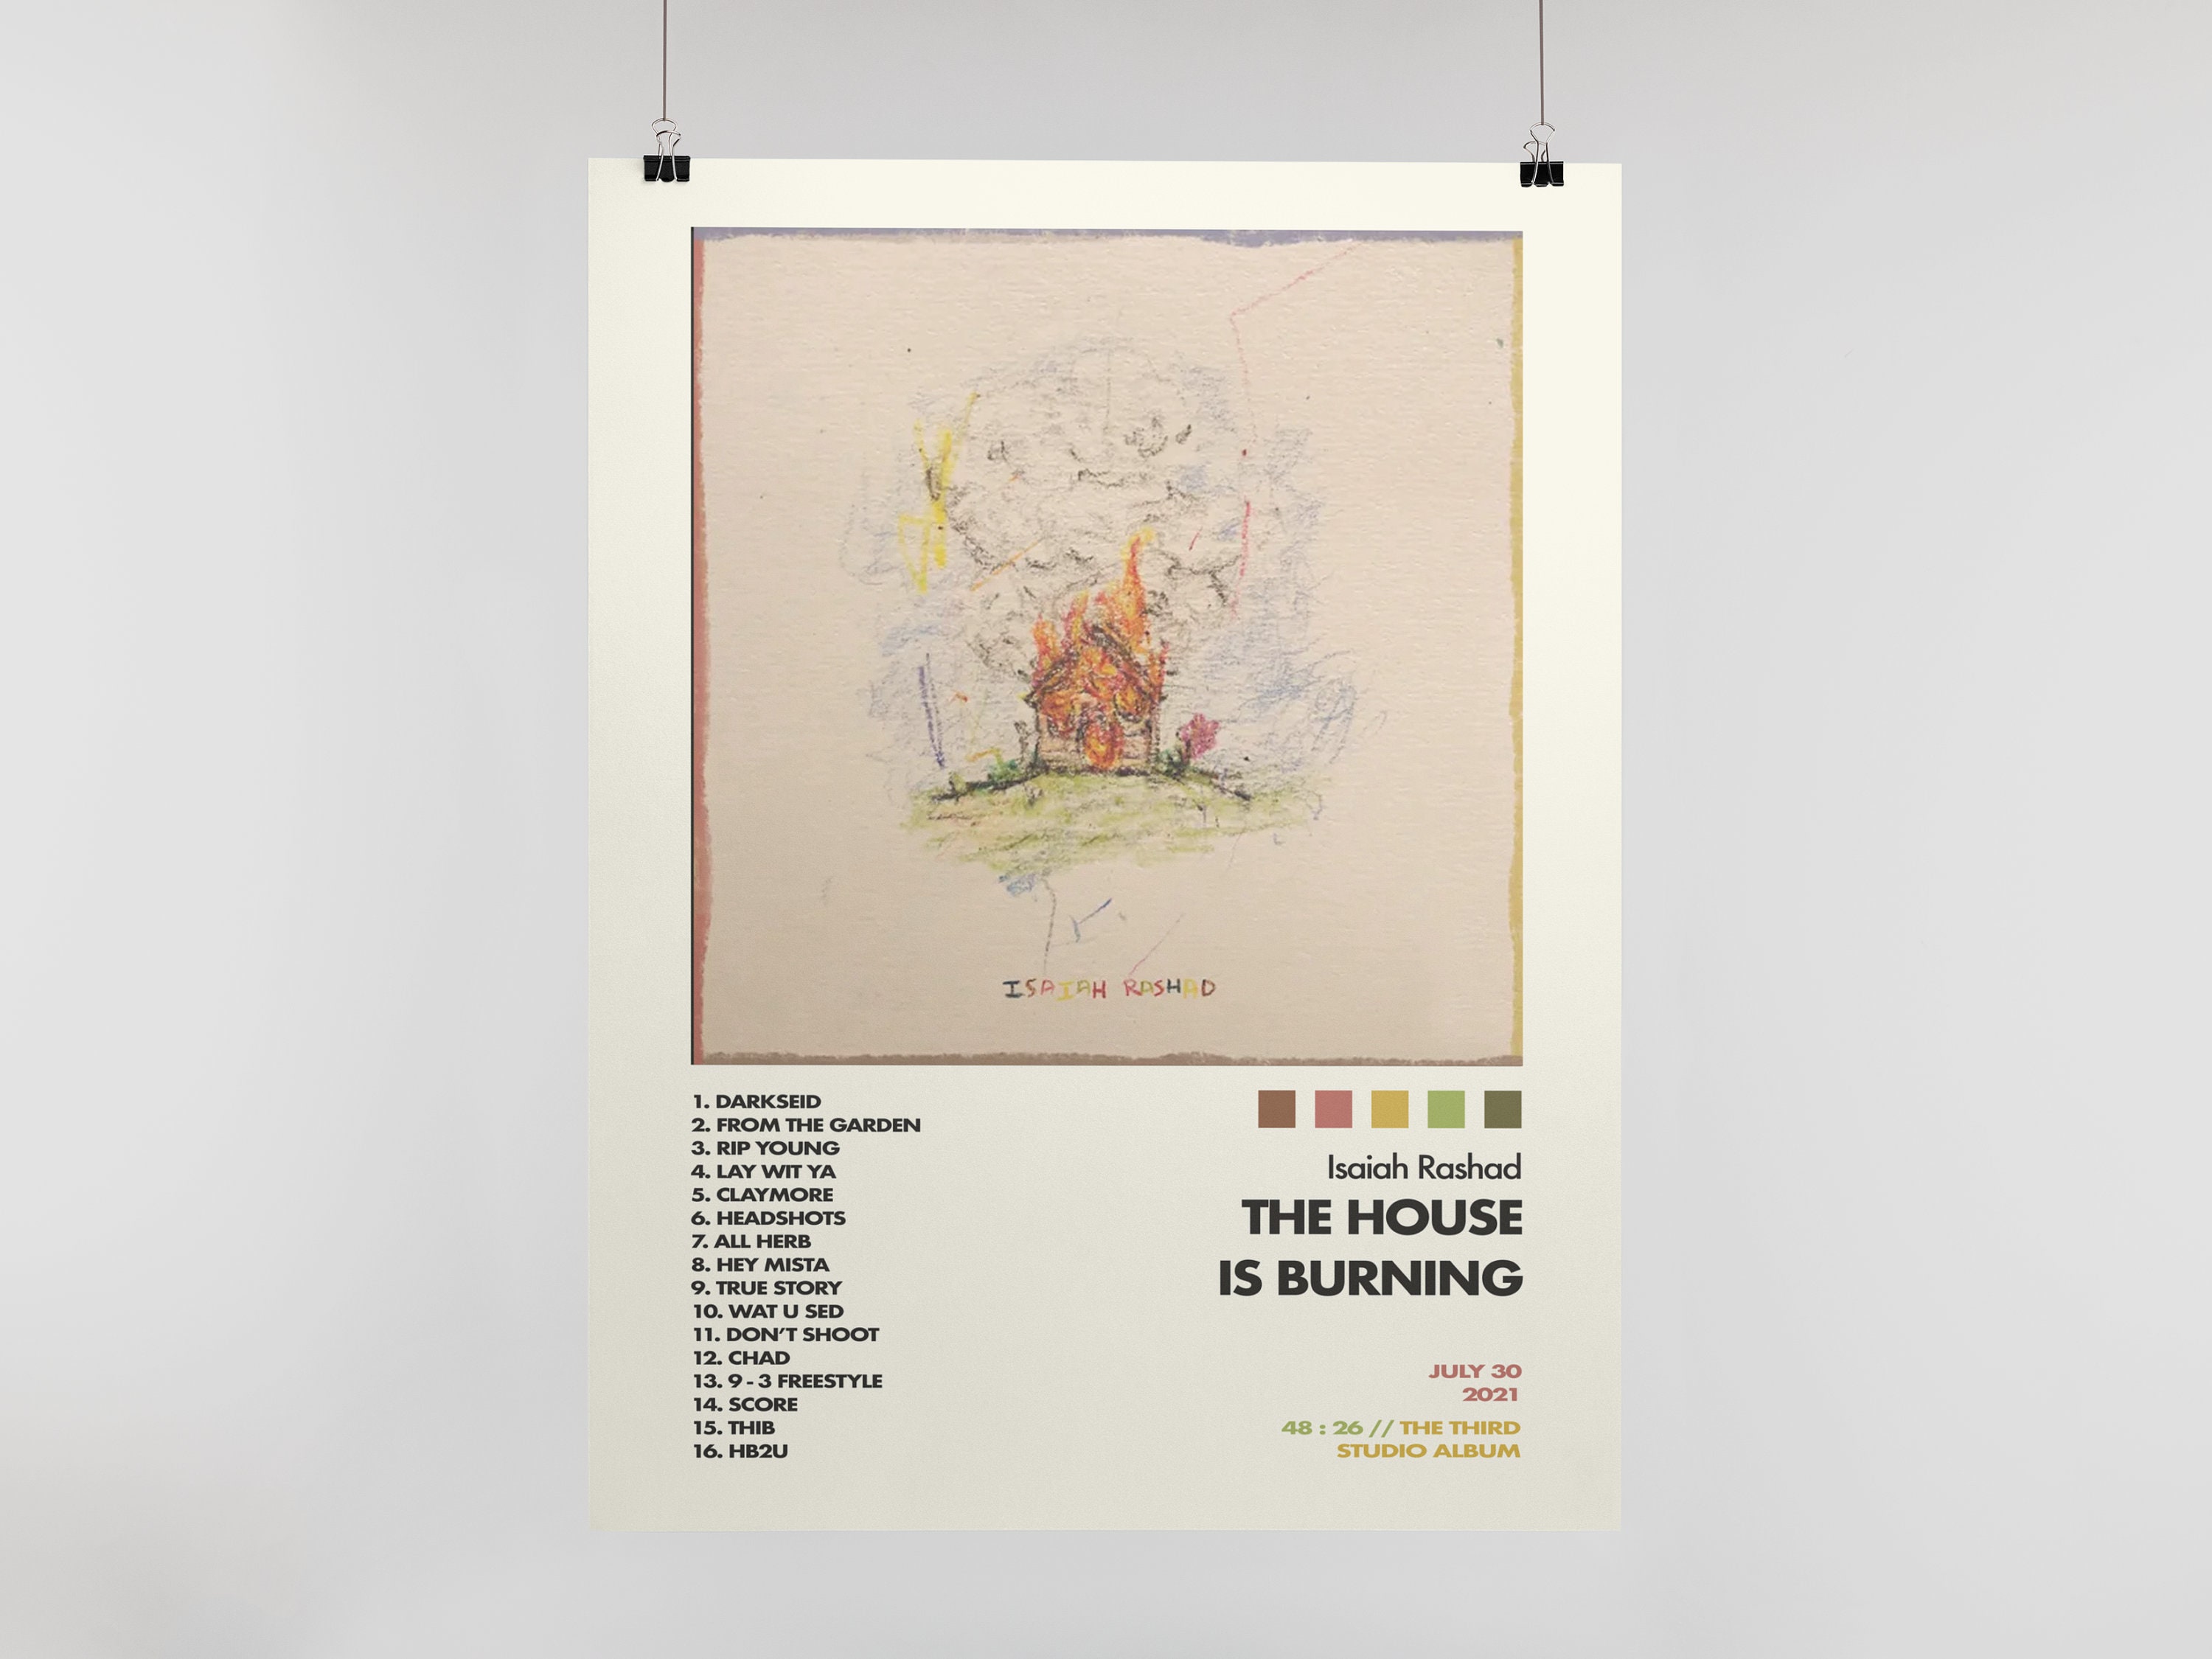 Isaiah Rashad 'The Sun's Tirade' Art Music Album Poster HD Print 12" 16" 20" 24" 